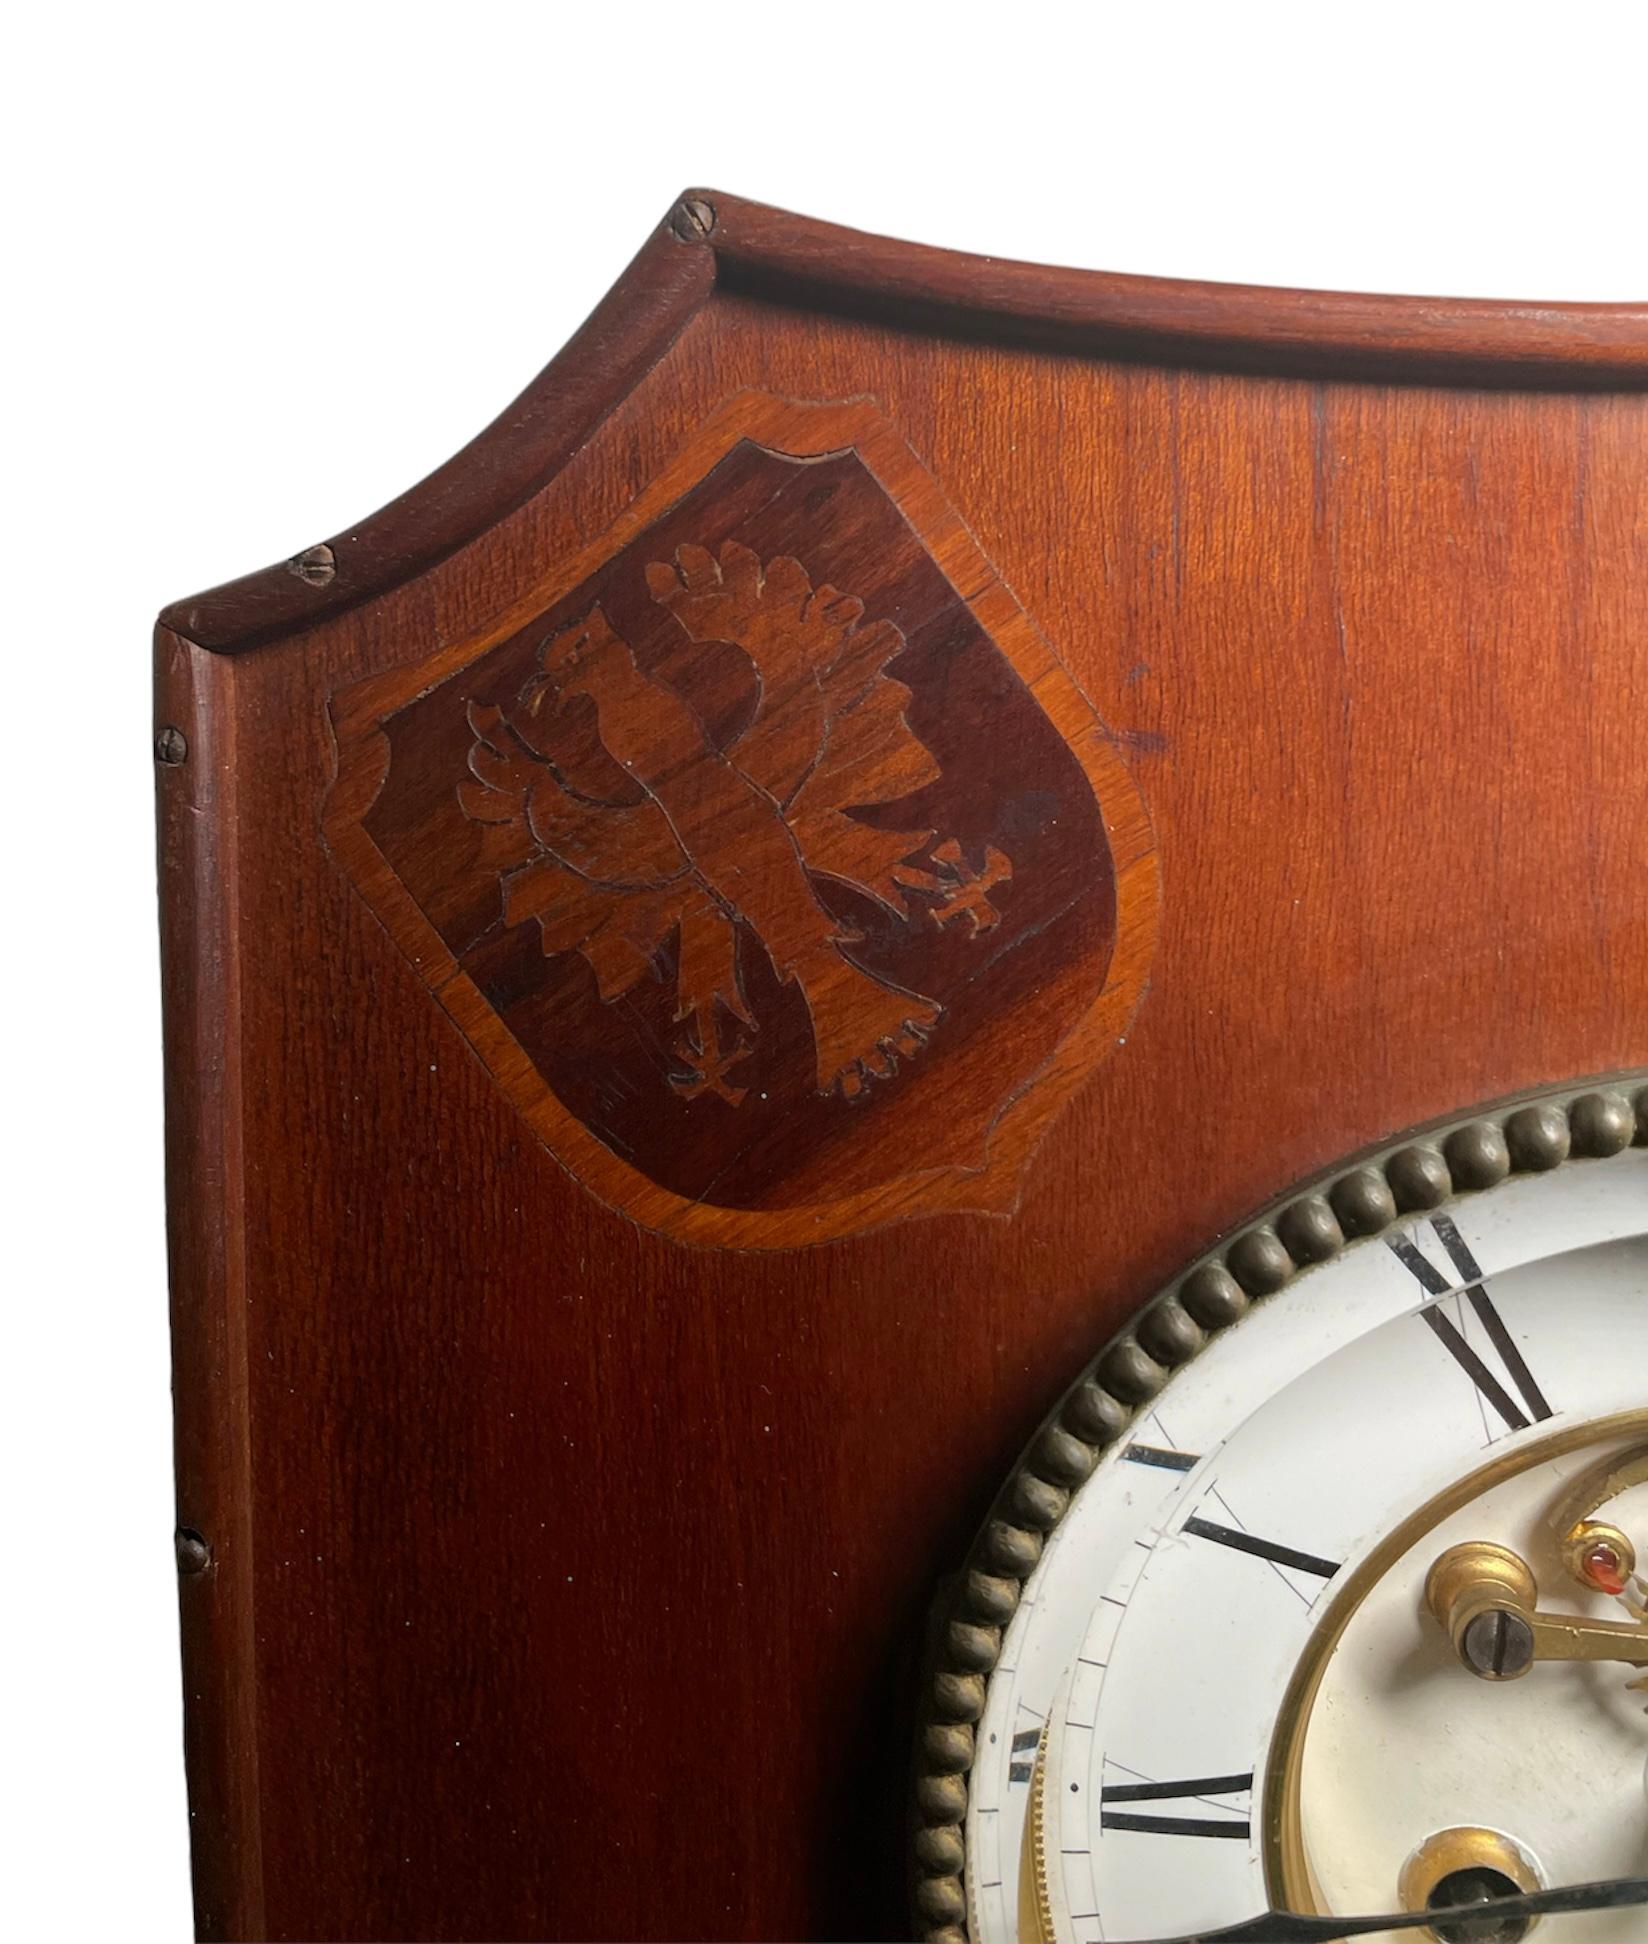 Dies ist eine Henry Lepaute Wanduhr aus Holz. Es stellt das Holzgehäuse der Uhr in Form eines Wappenschildes dar. Das Holzgehäuse ist in den oberen Ecken mit je einem Wappensymbol aus Intarsien geschmückt. Das runde Ziffernblatt ist weiß mit